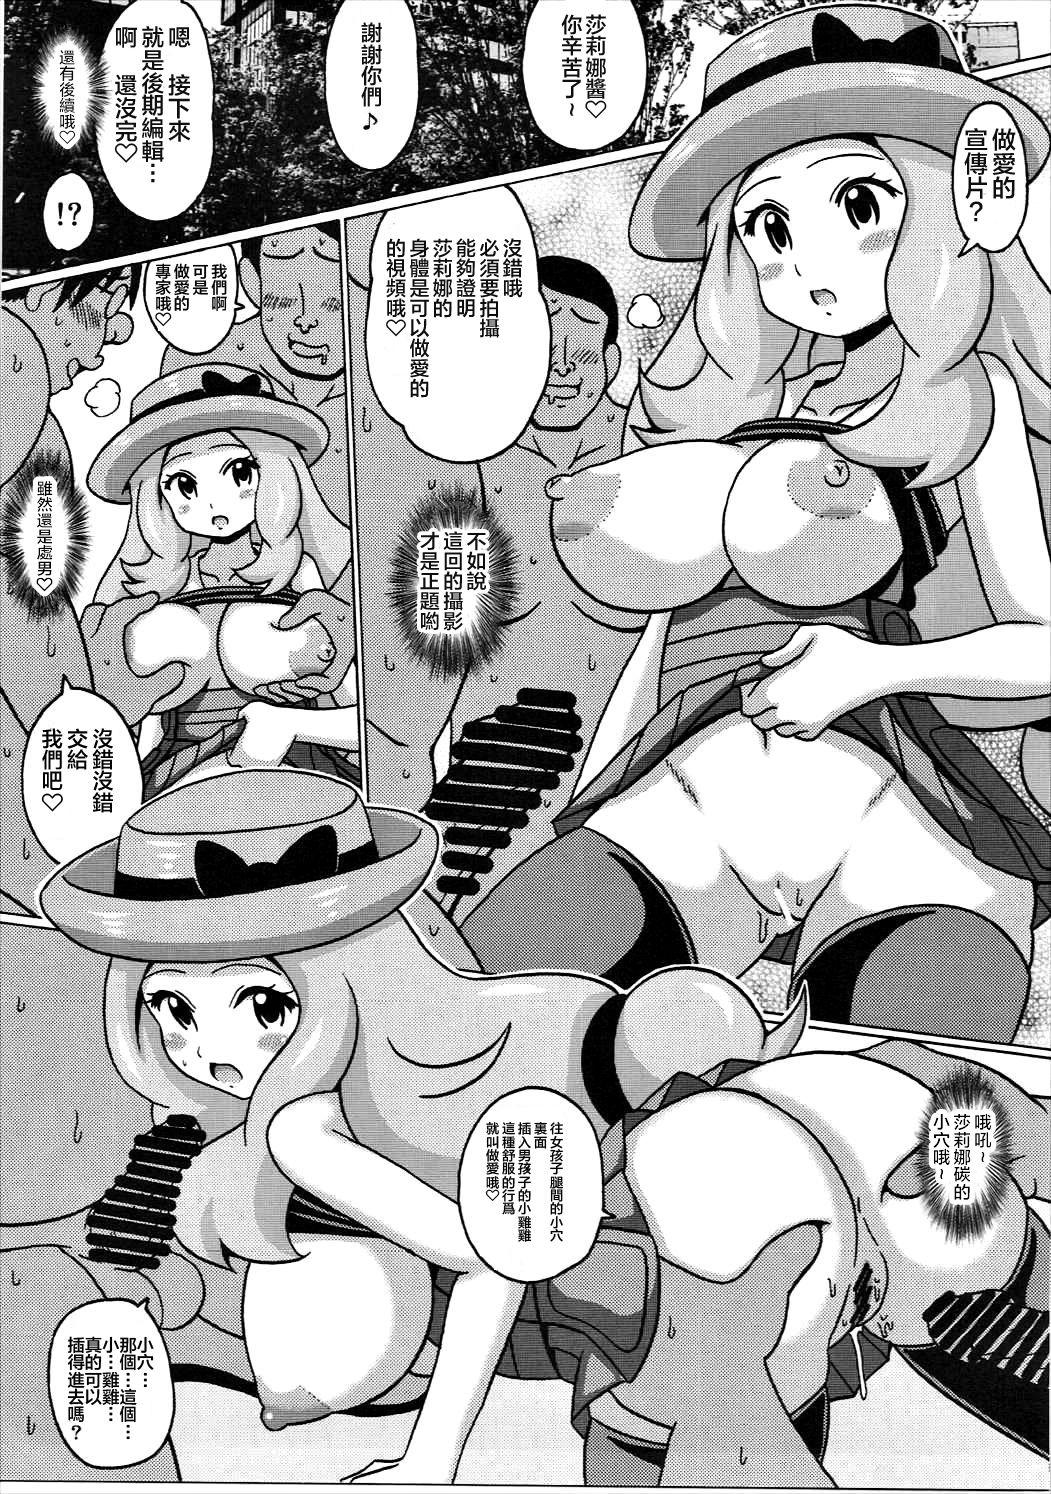 Nut Serena no TraPro - Pokemon Trap - Page 7